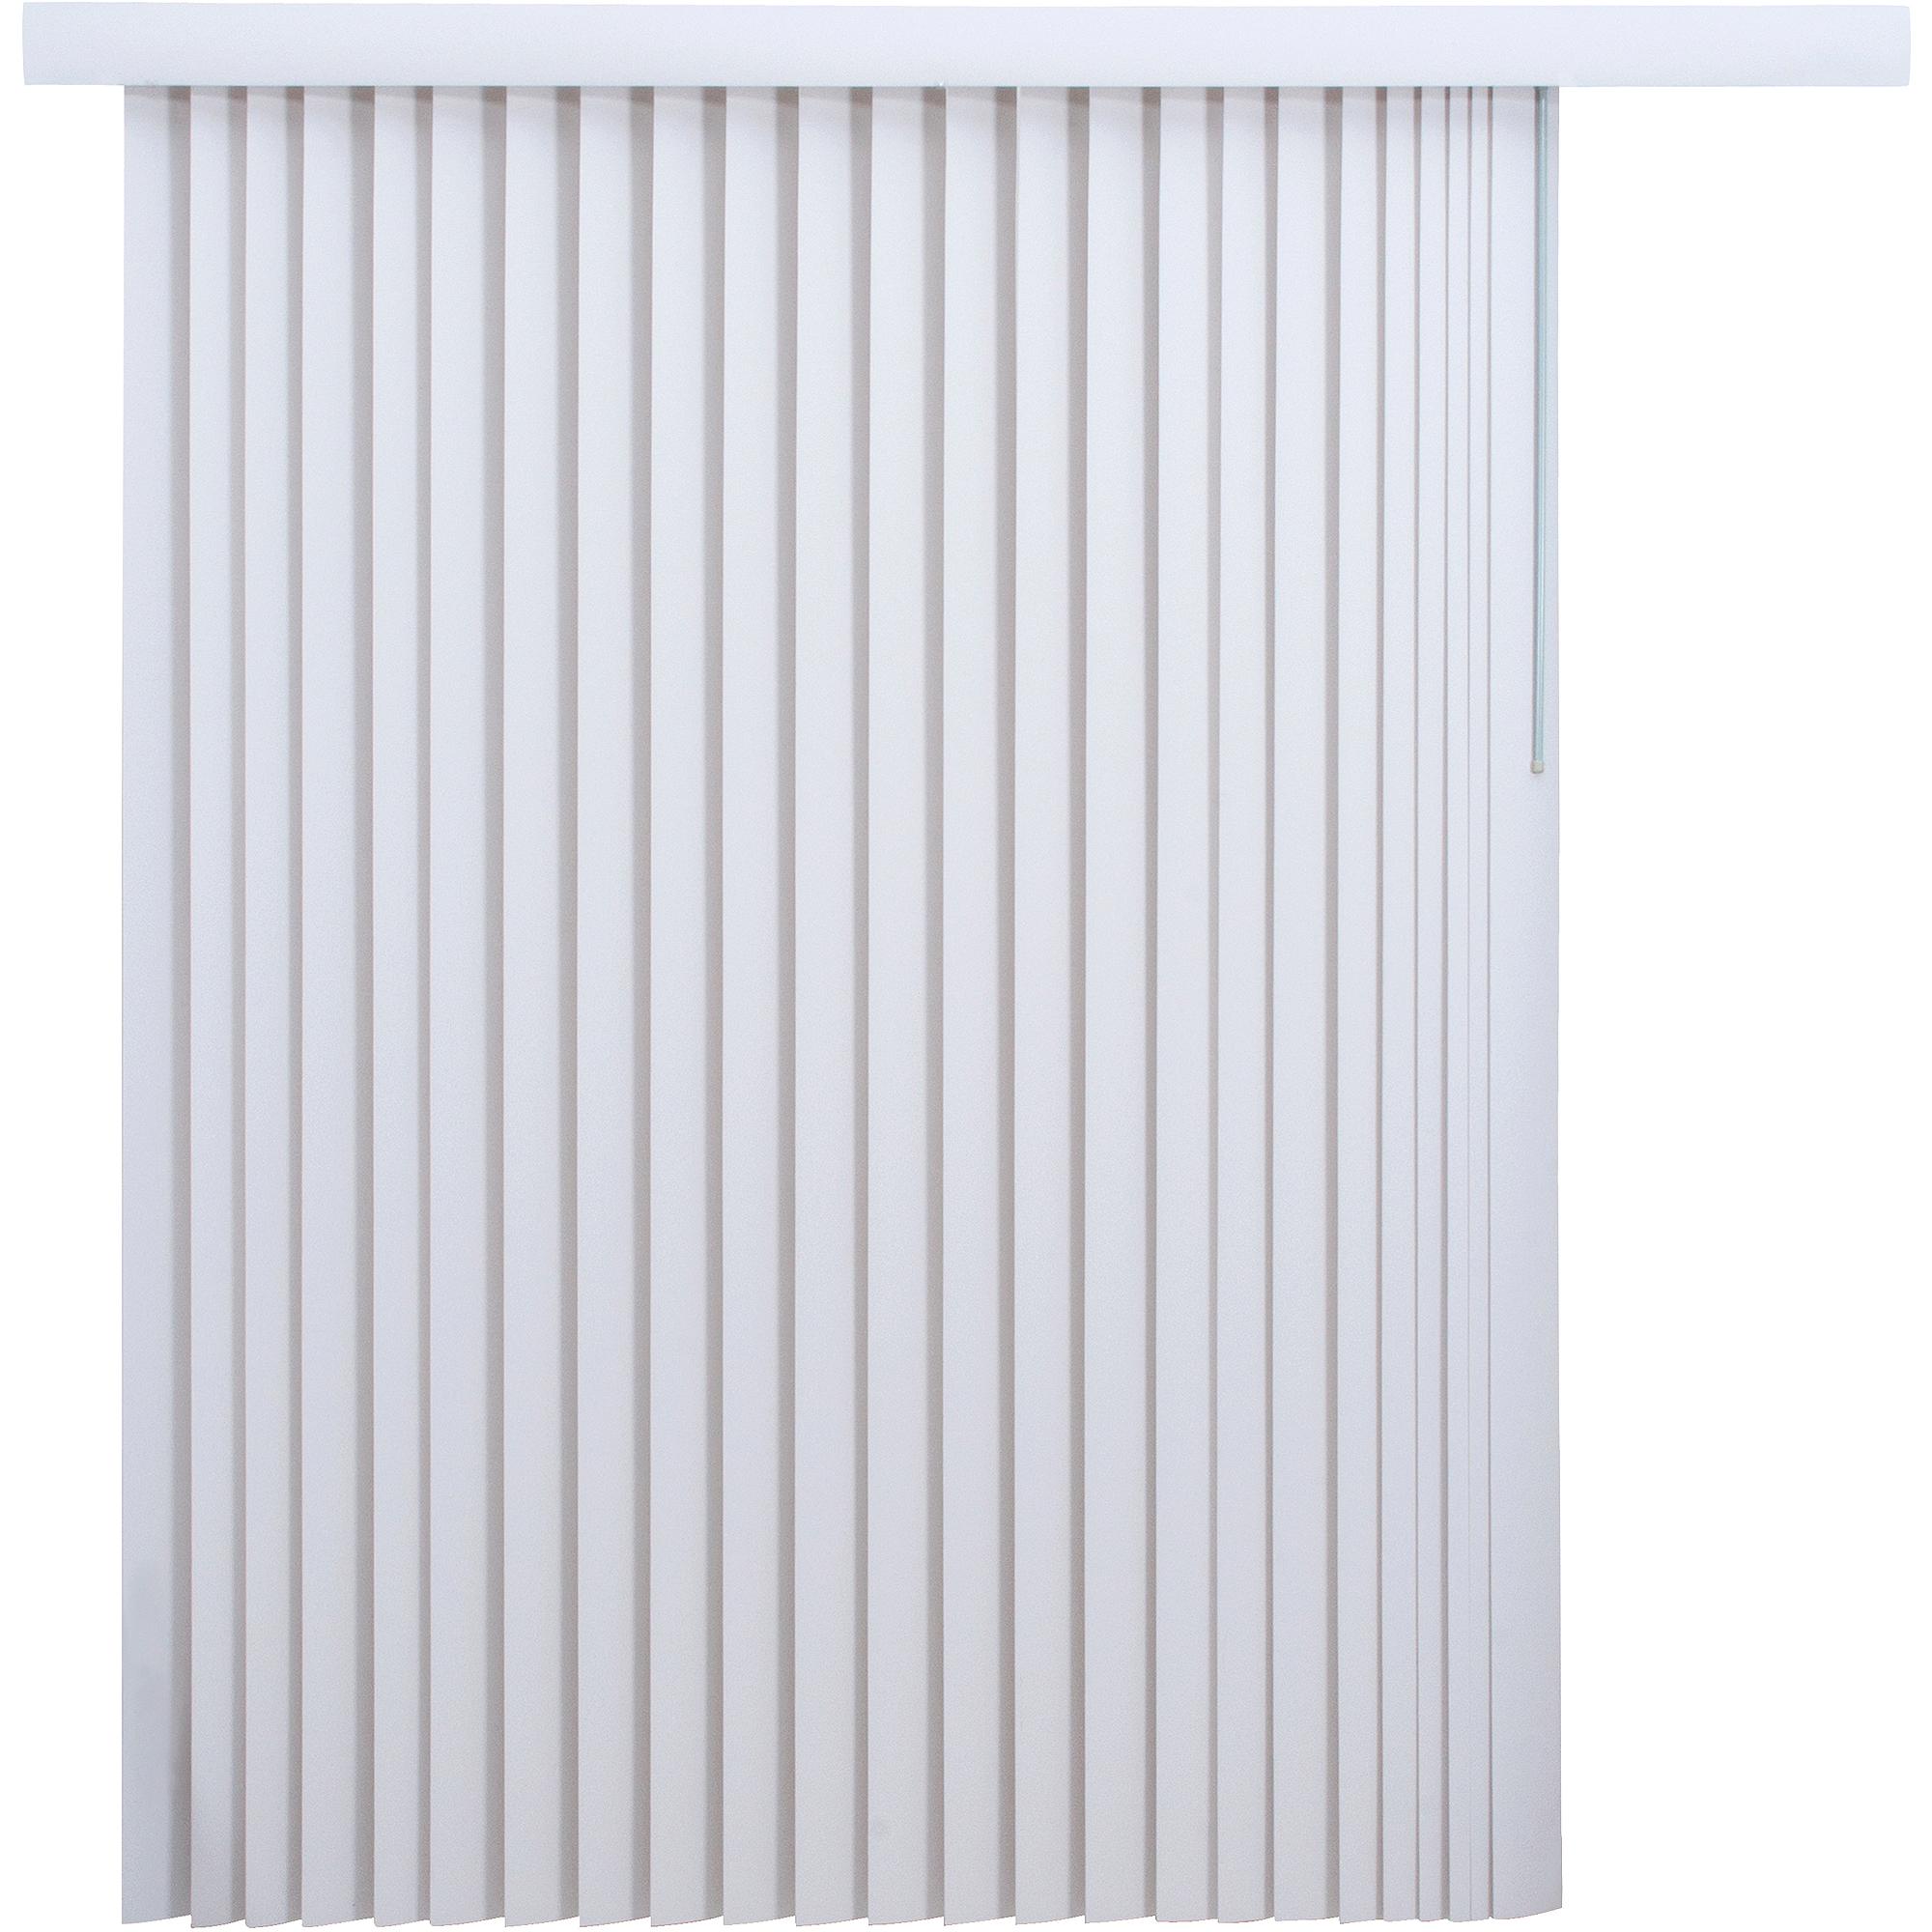 white blinds mainstays light-filtering vertical blinds, white - walmart.com VGJKTQD